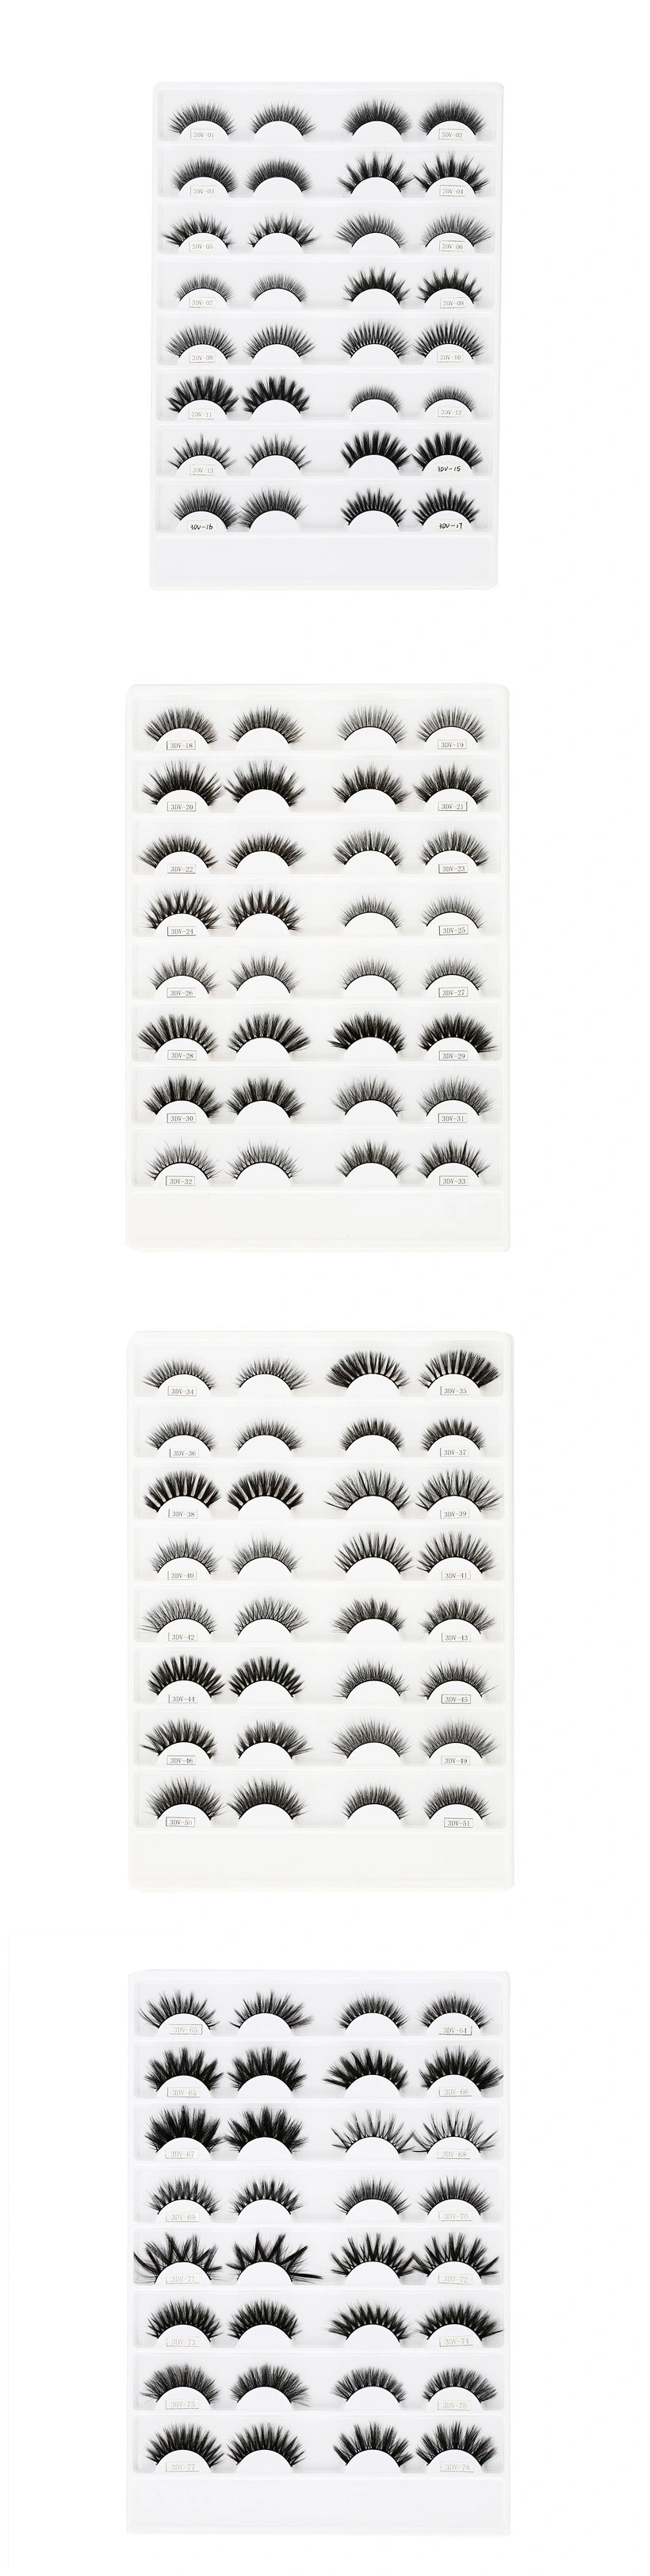 China Factory Wholesale False Eyelash Magnetic Eyeliner Eyelash Mink Eyelash Silk Eyelash Extension